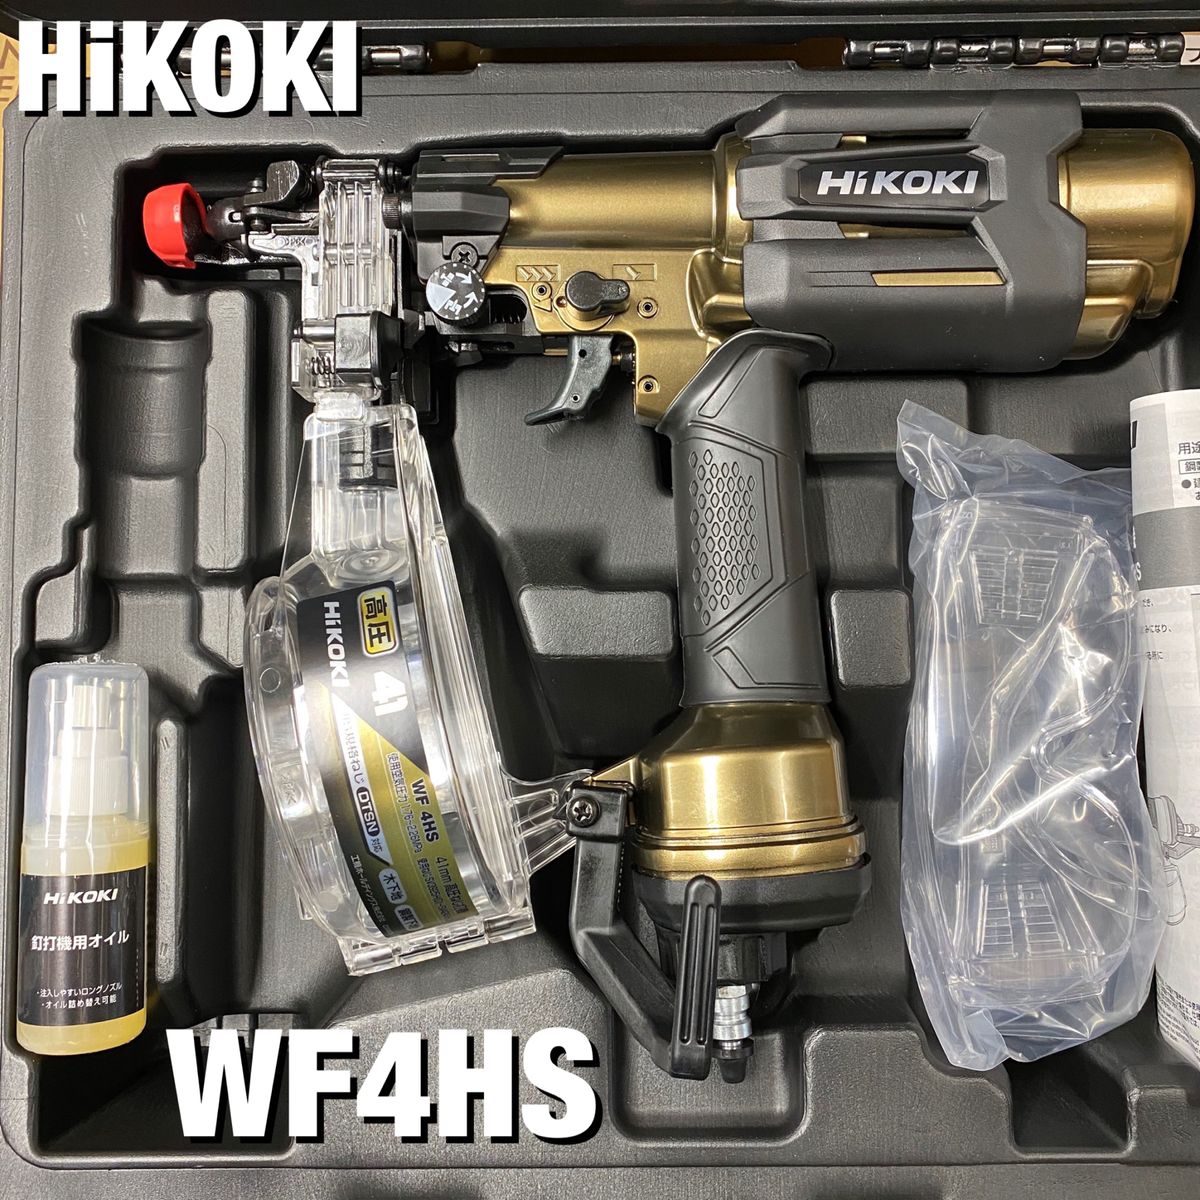 HiKOKI 高圧ビス打機 WF4HS Yahoo!フリマ（旧）